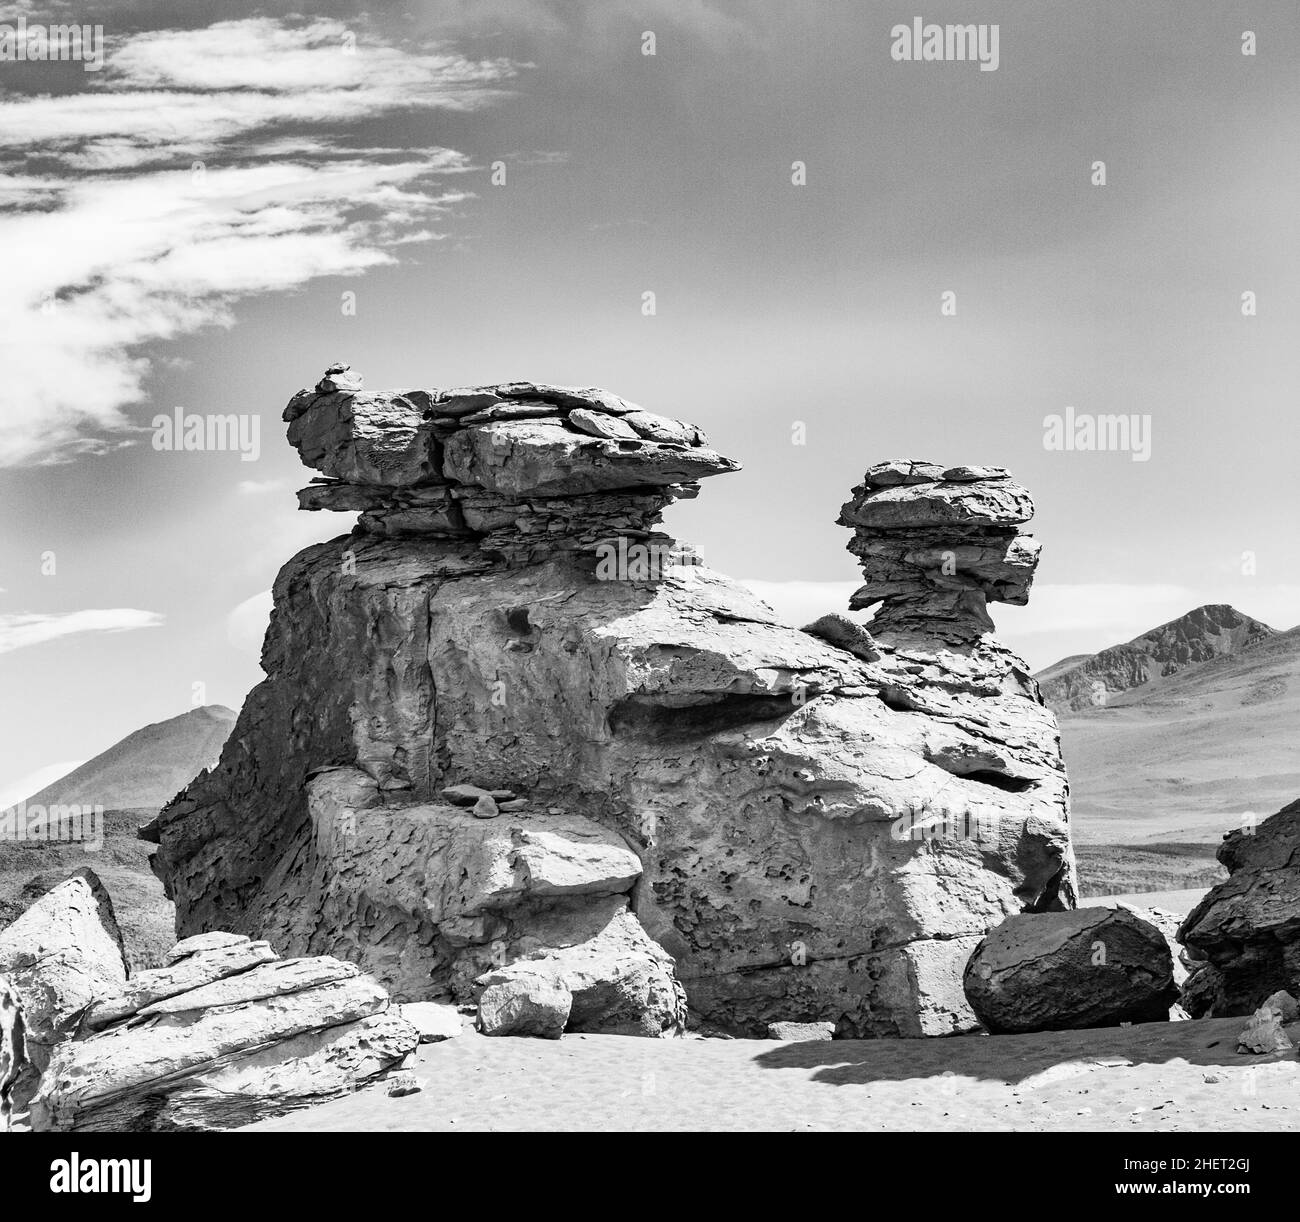 Arbol de Piedra (Stein) ist ein isoliertes Felsformation in der bolivianischen Wüste Stockfoto